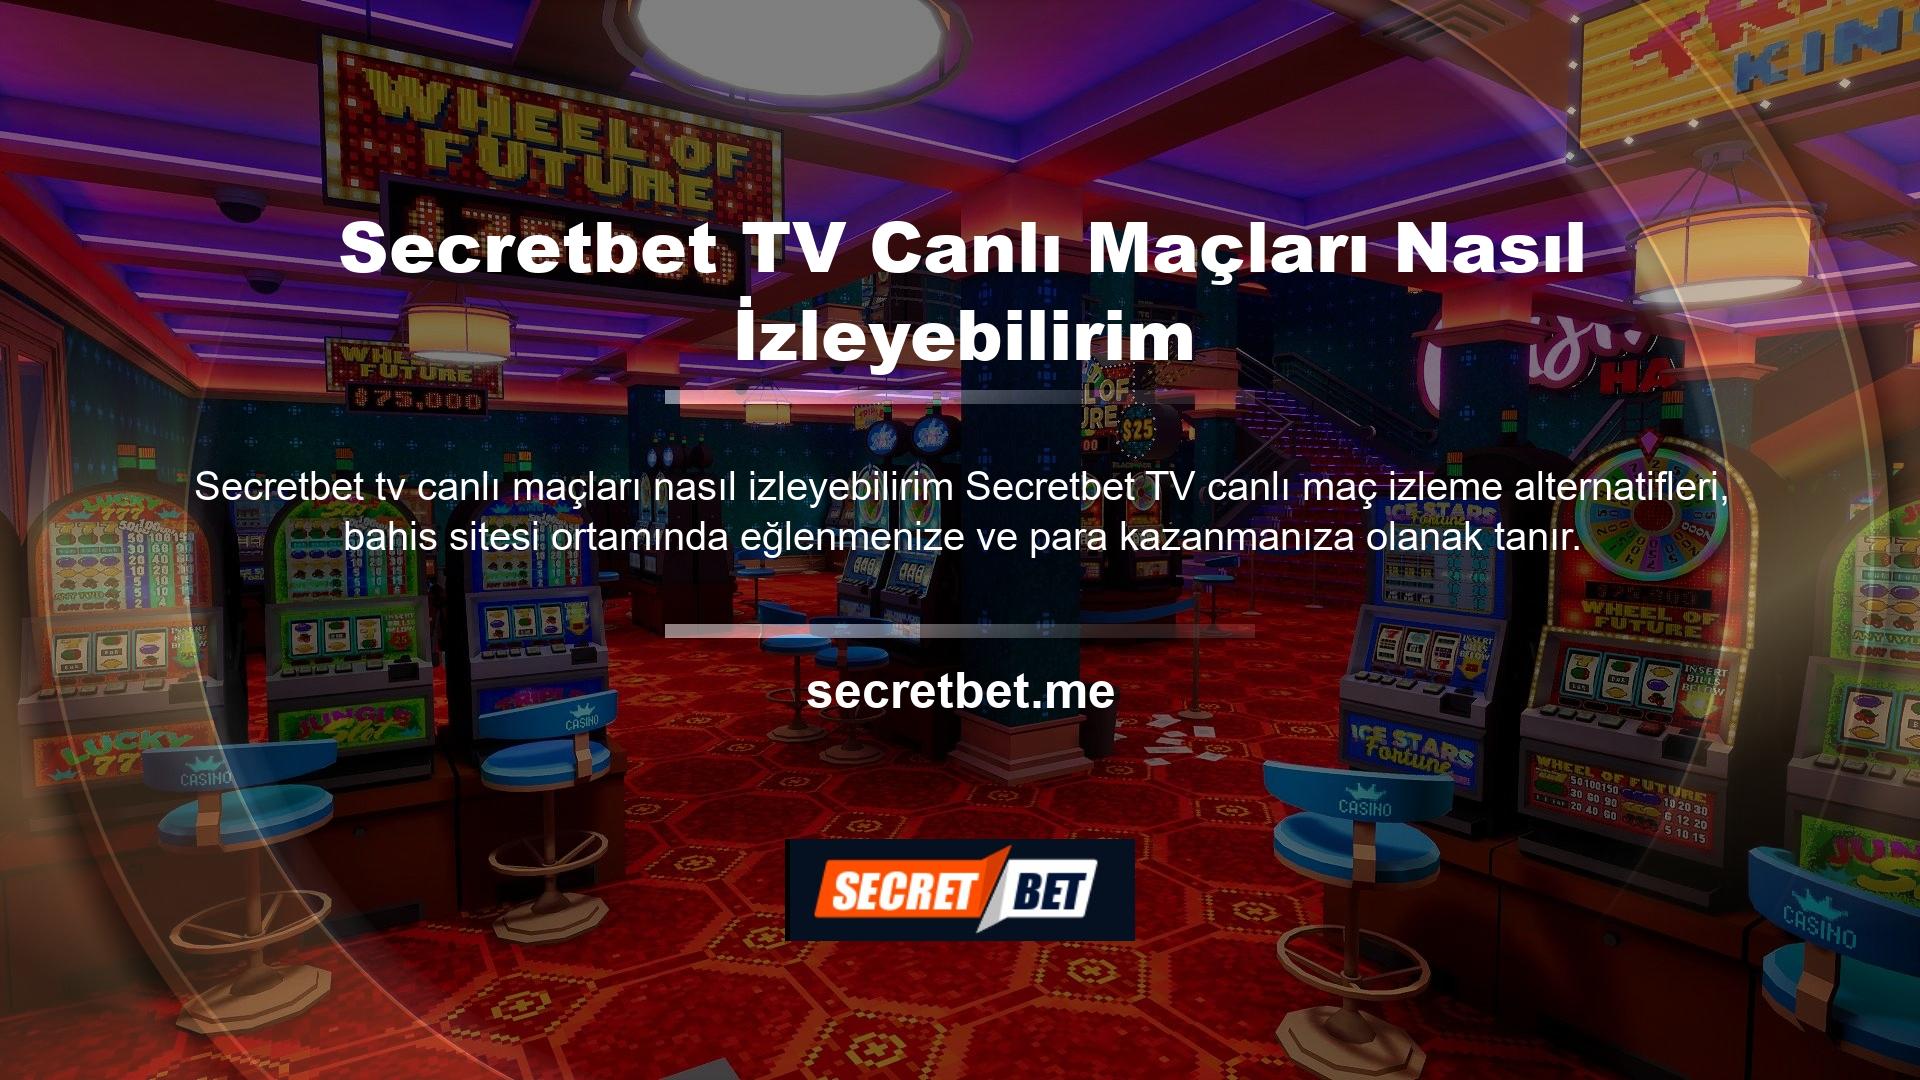 Secretbet TV’de canlı maçları izlemek için öncelikle bahis sitesine giriş yapmalısınız